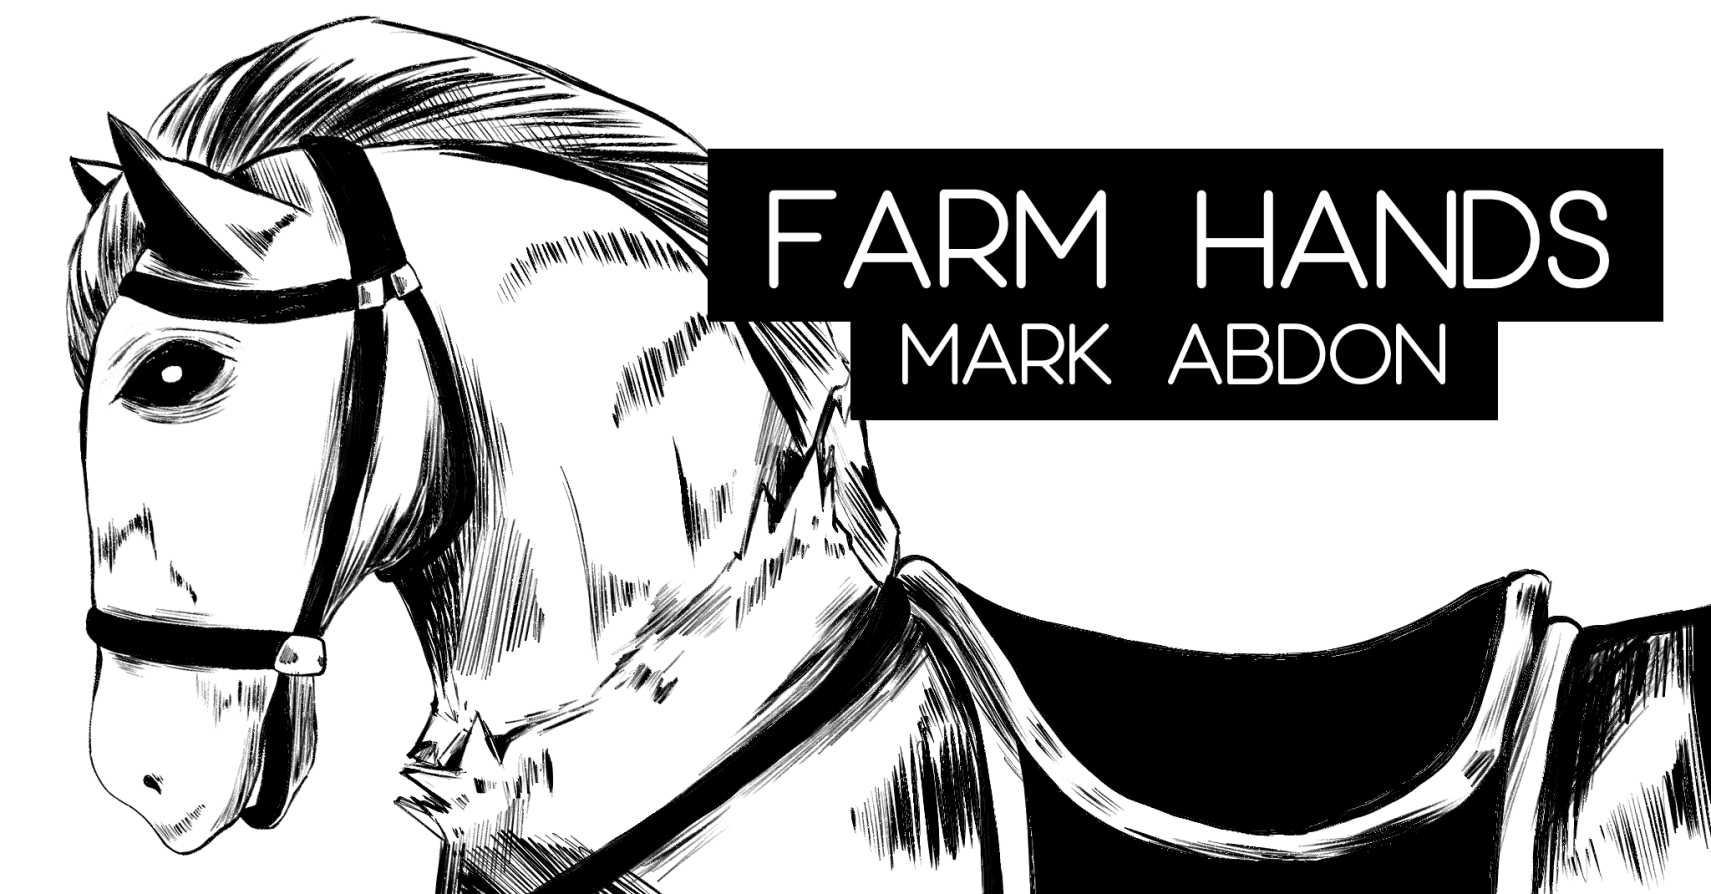 FARM HANDS by Mark Abdon